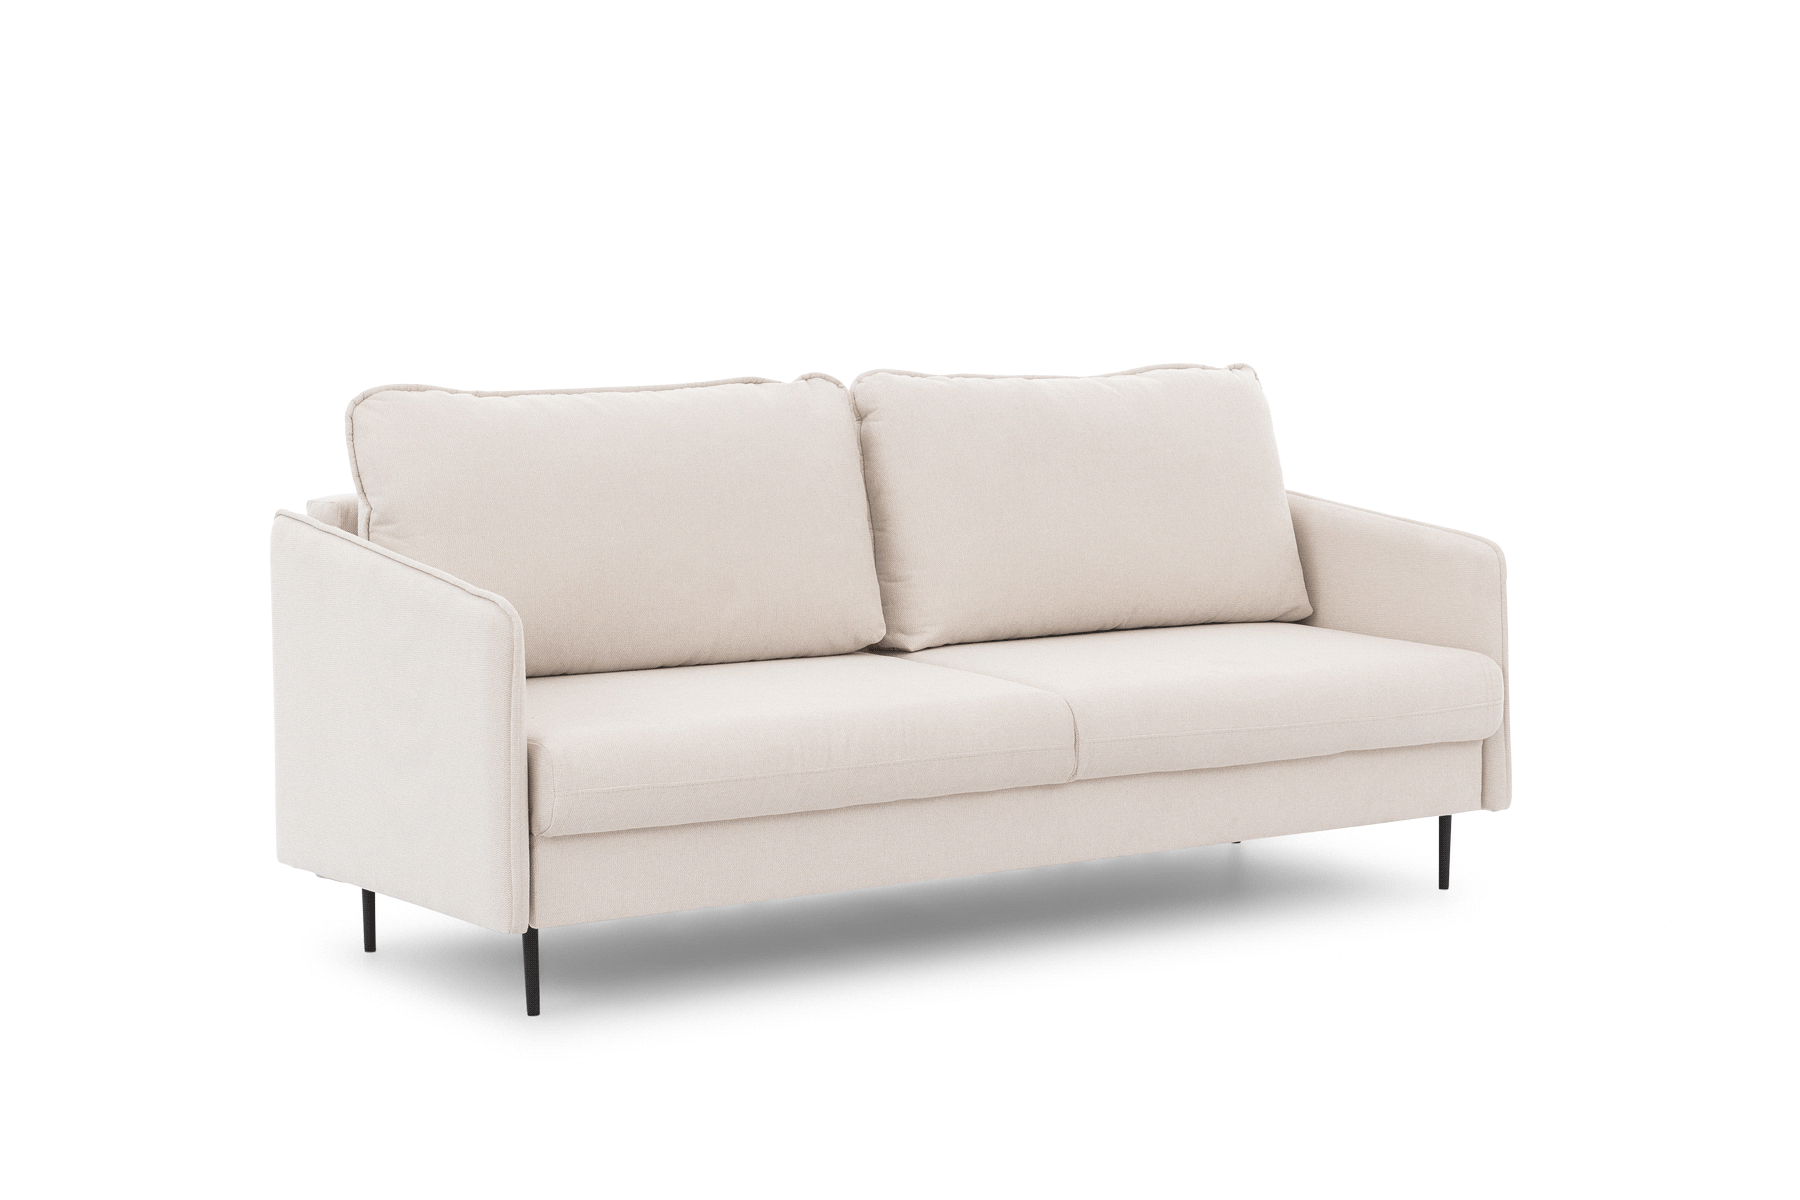 Taila kinyitható kanapé - Velutto 11, arany lábak Taila kinyitható kanapé